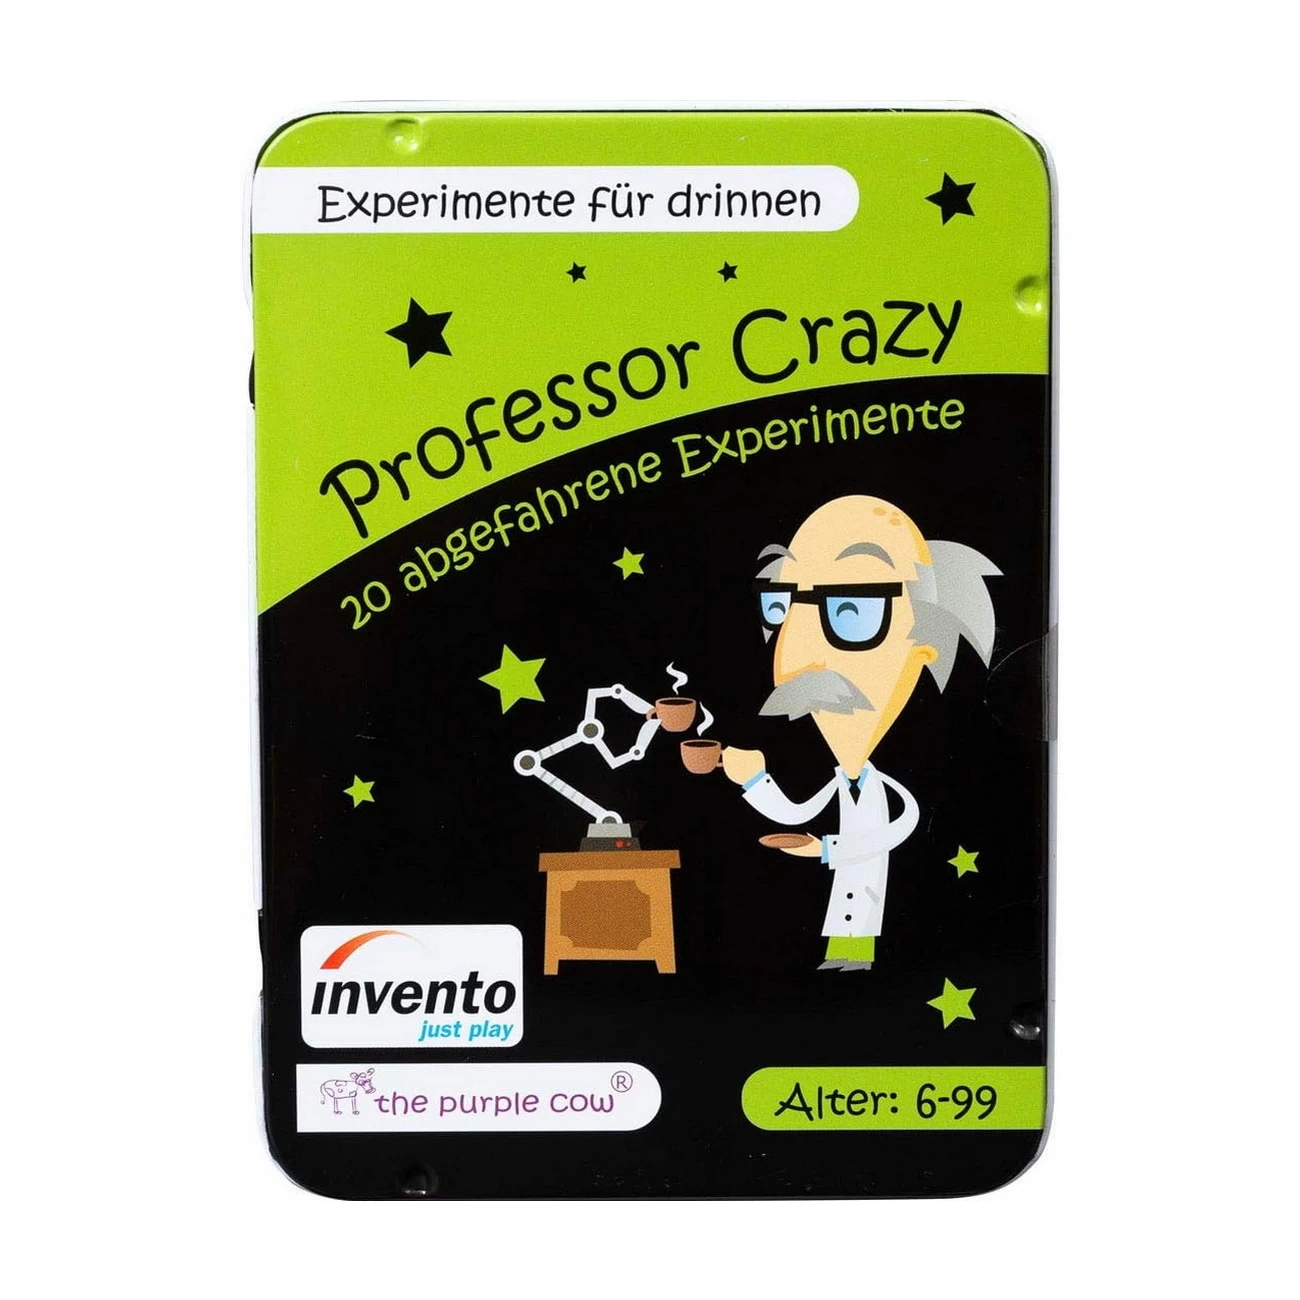 Professor Crazy - Experimente für drinnen